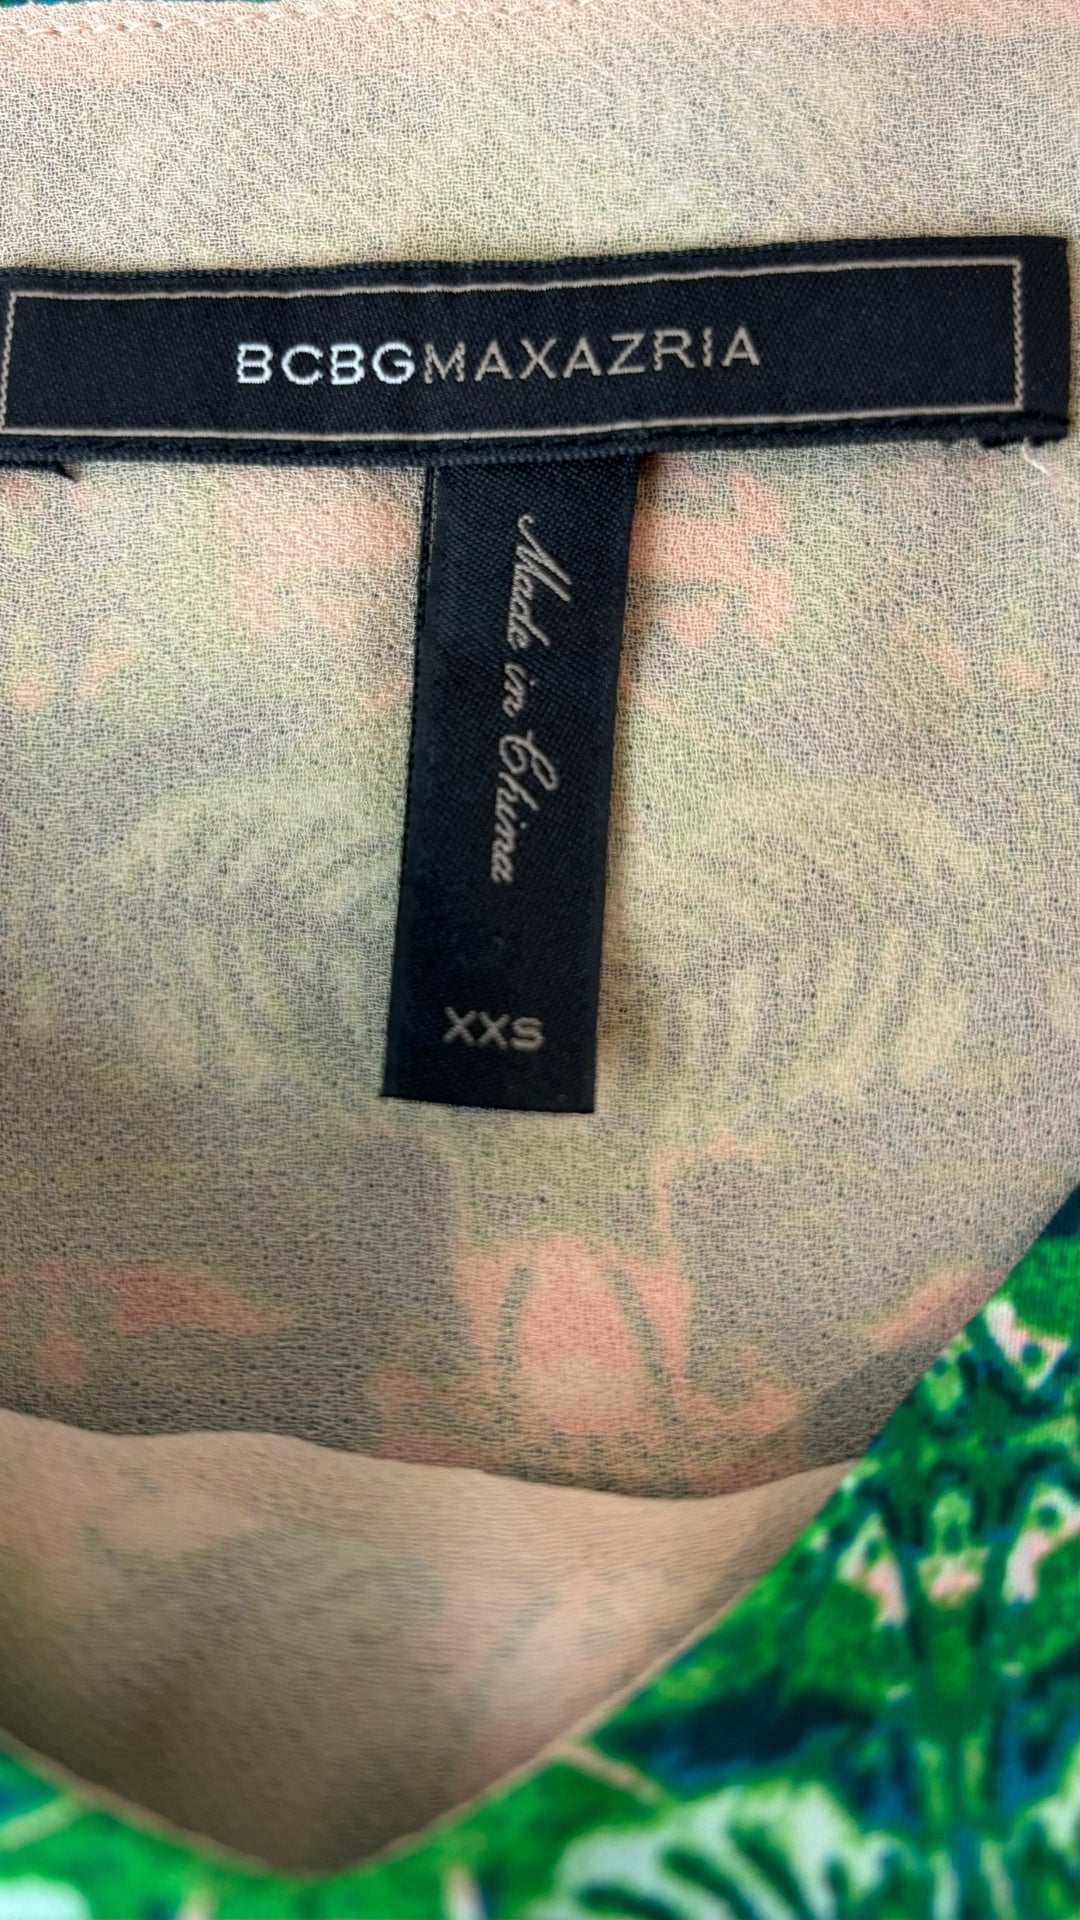 Camisole fluide florale à fines bretelles BCBG MaxAzria, taille xxs. Vue de l'étiquette de marque et taille.